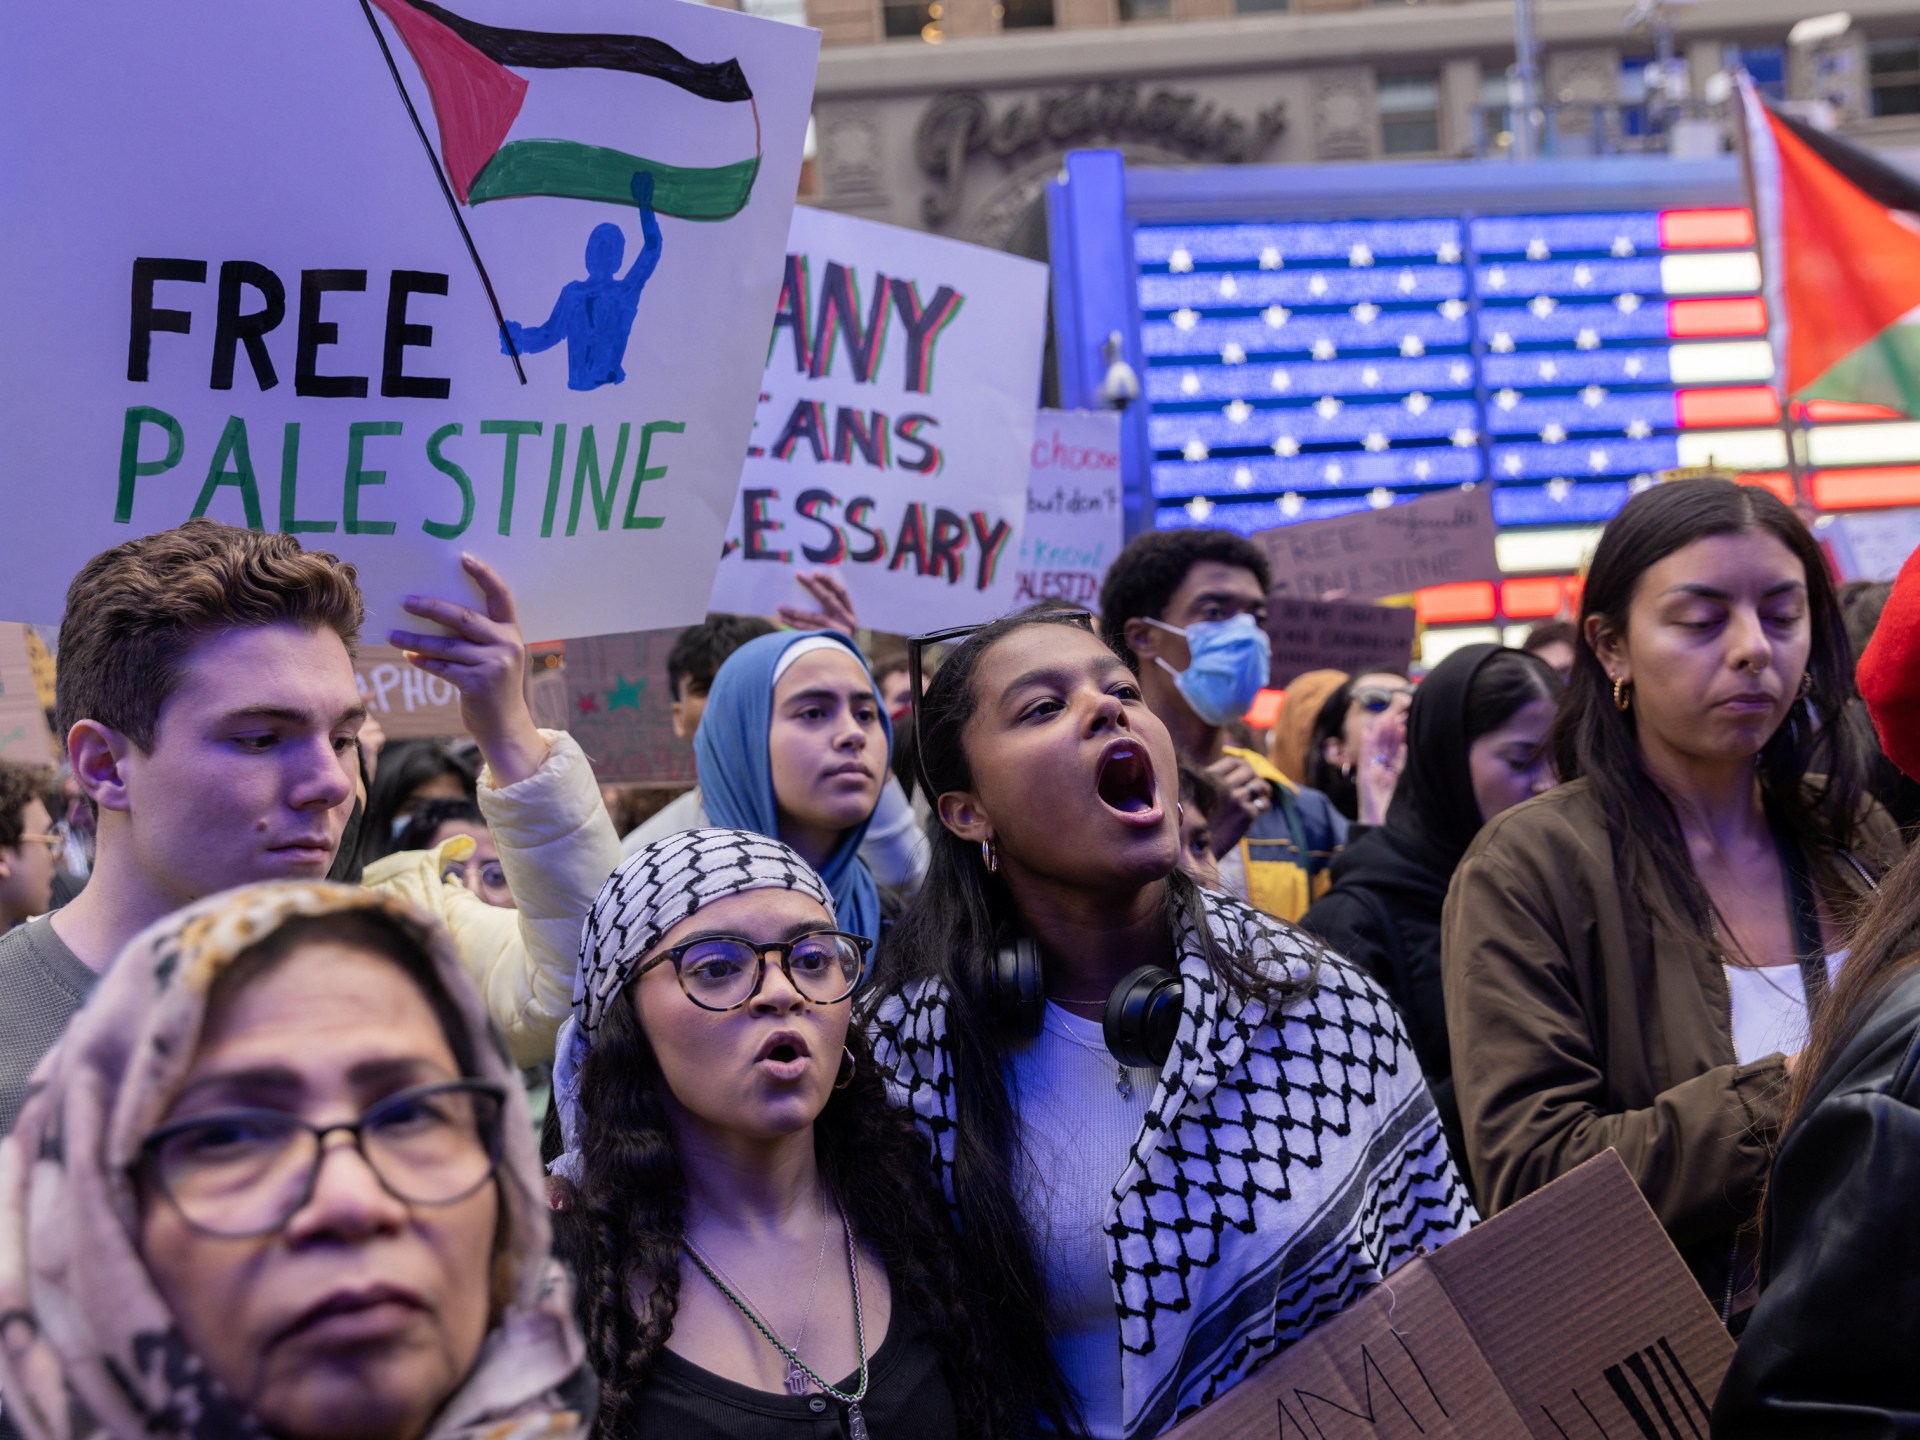 مظاهرات في أوروبا وأميركا تأييدا لغزة وتنديدا بإسرائيل | أخبار – البوكس نيوز